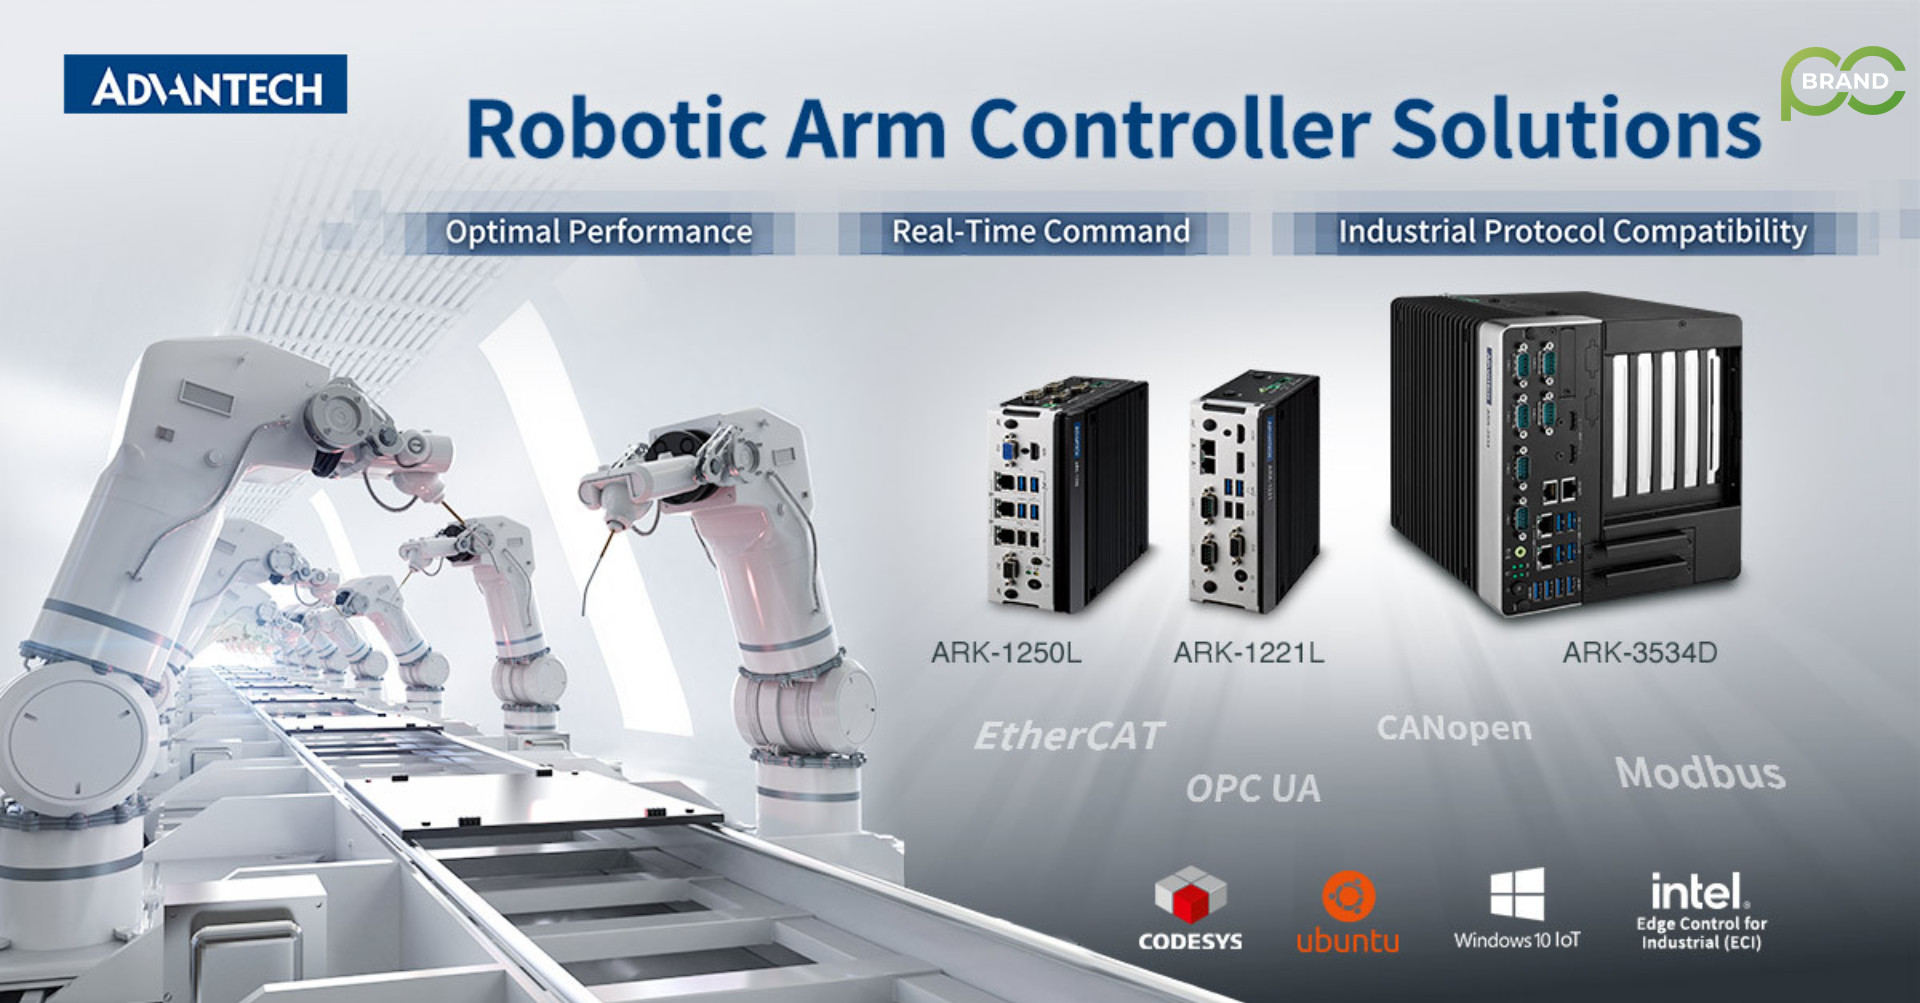 🔥Giải pháp điều khiển cánh tay robot với dòng ARK của Advantech hợp lý hóa các hoạt động theo thời gian thực và nâng cao năng suất.